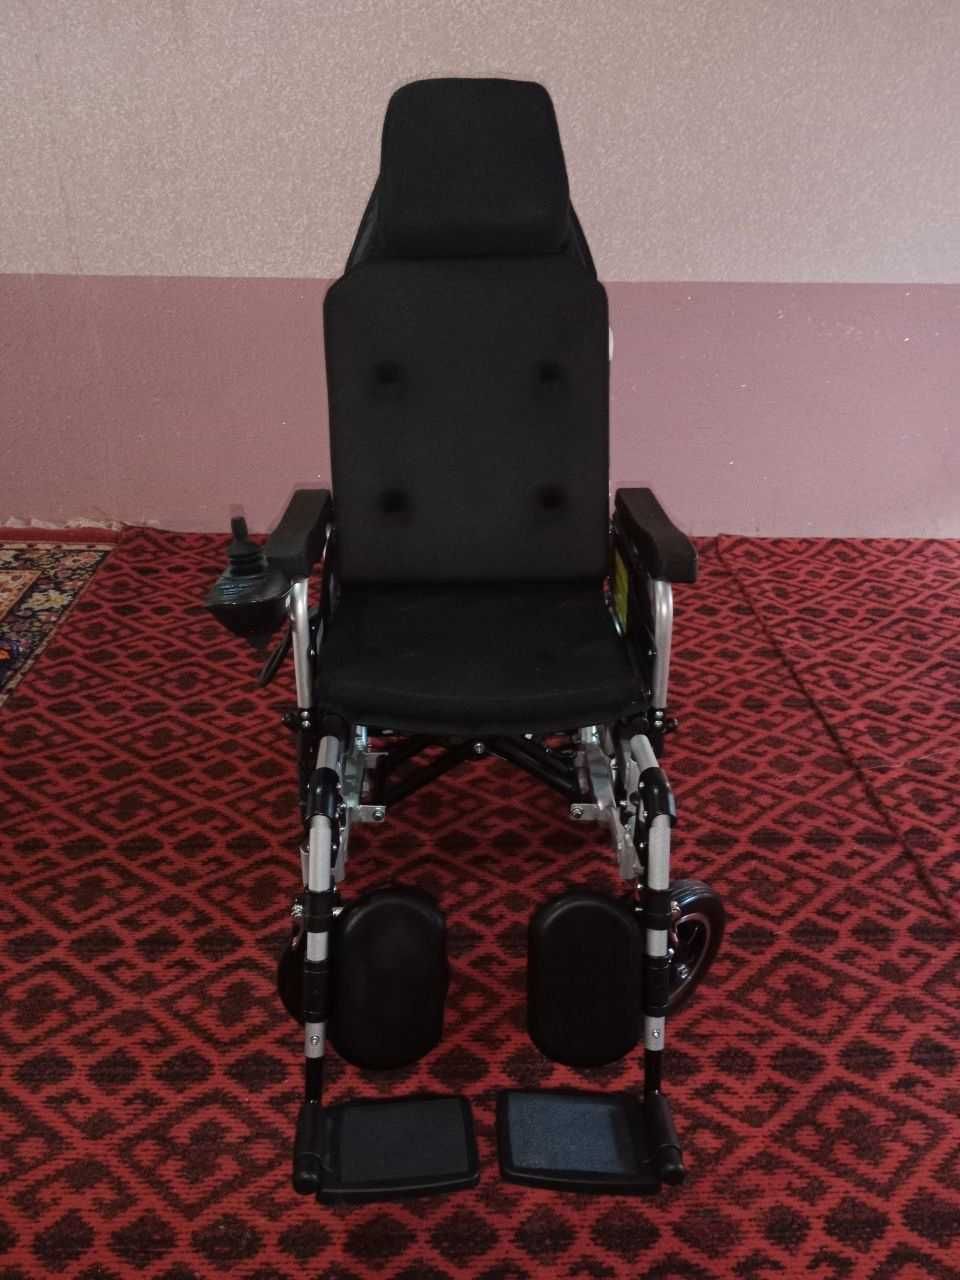 nogironlar aravachasi електрическая инвалидная коляска электронный